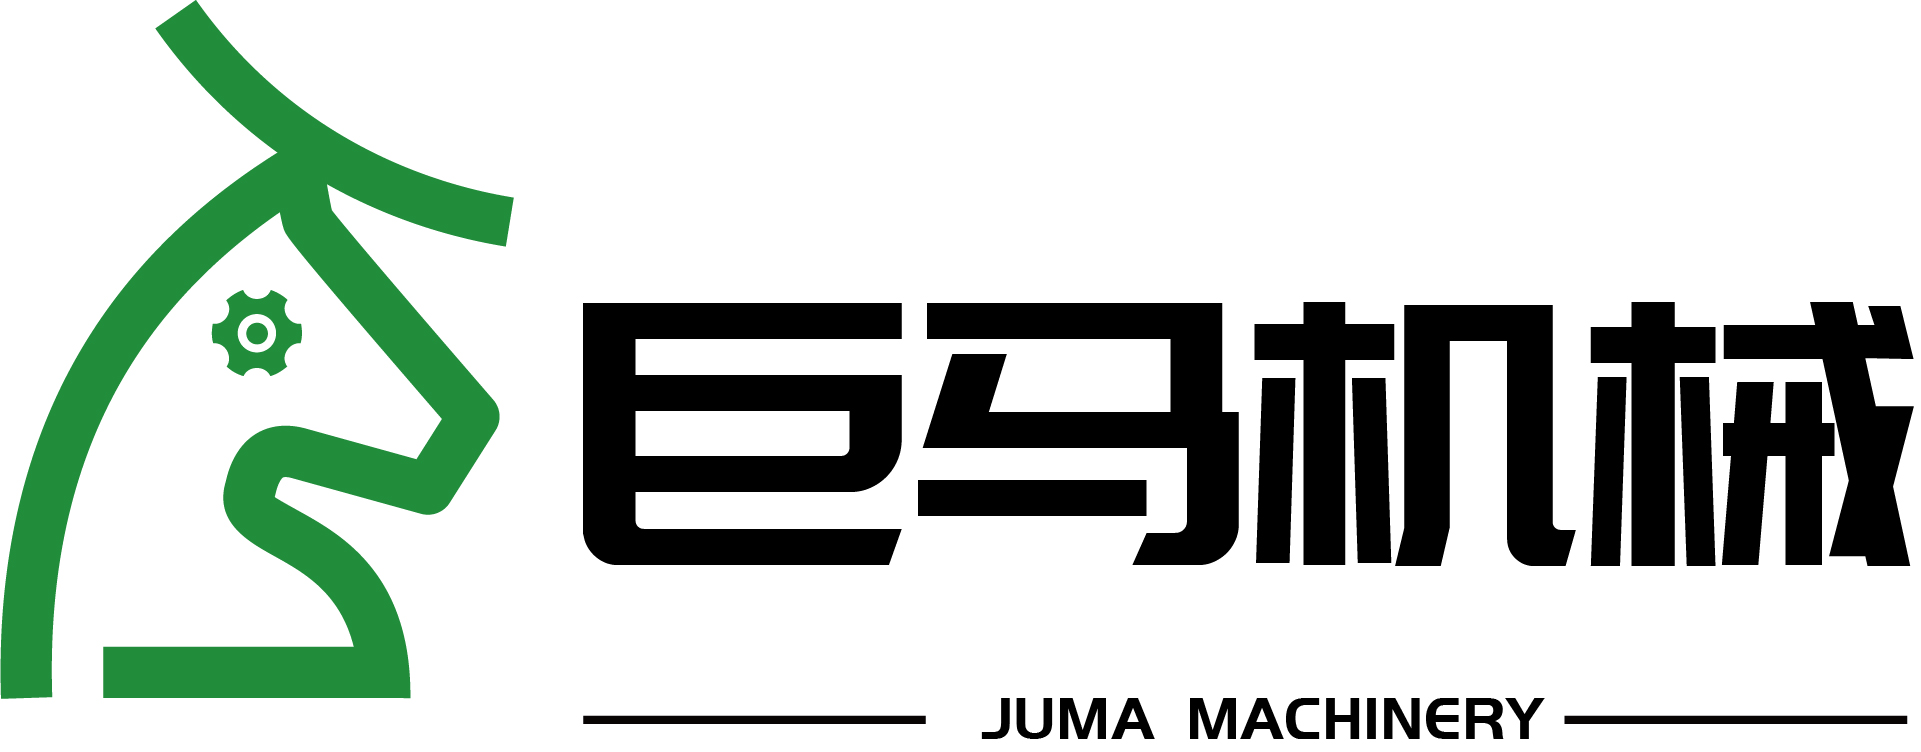 Juma Machinery